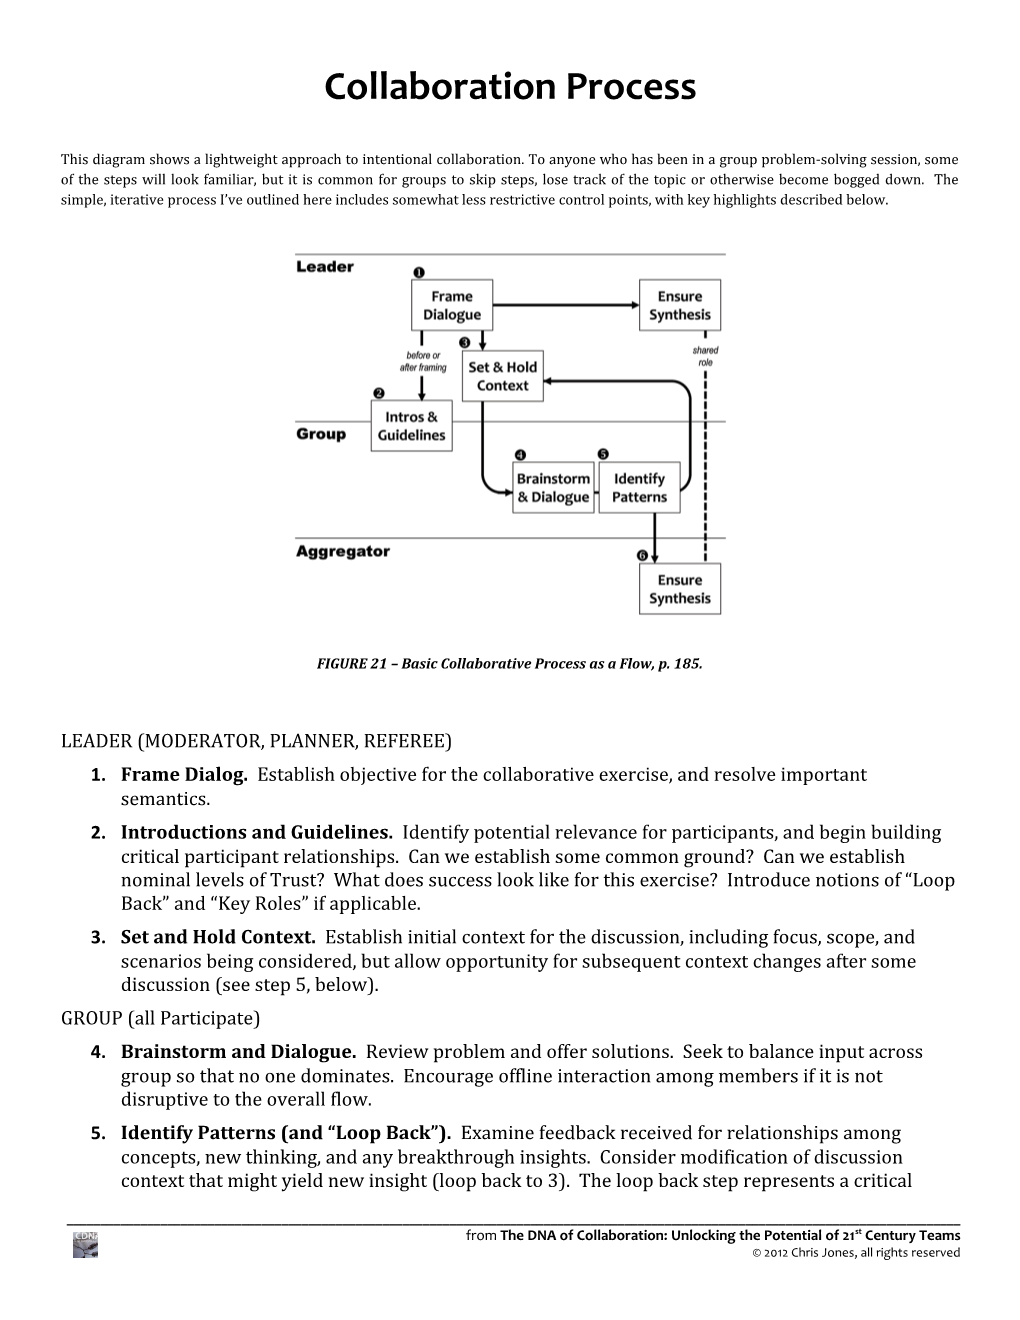 FIGURE 21 Basic Collaborative Processas a Flow, P. 185